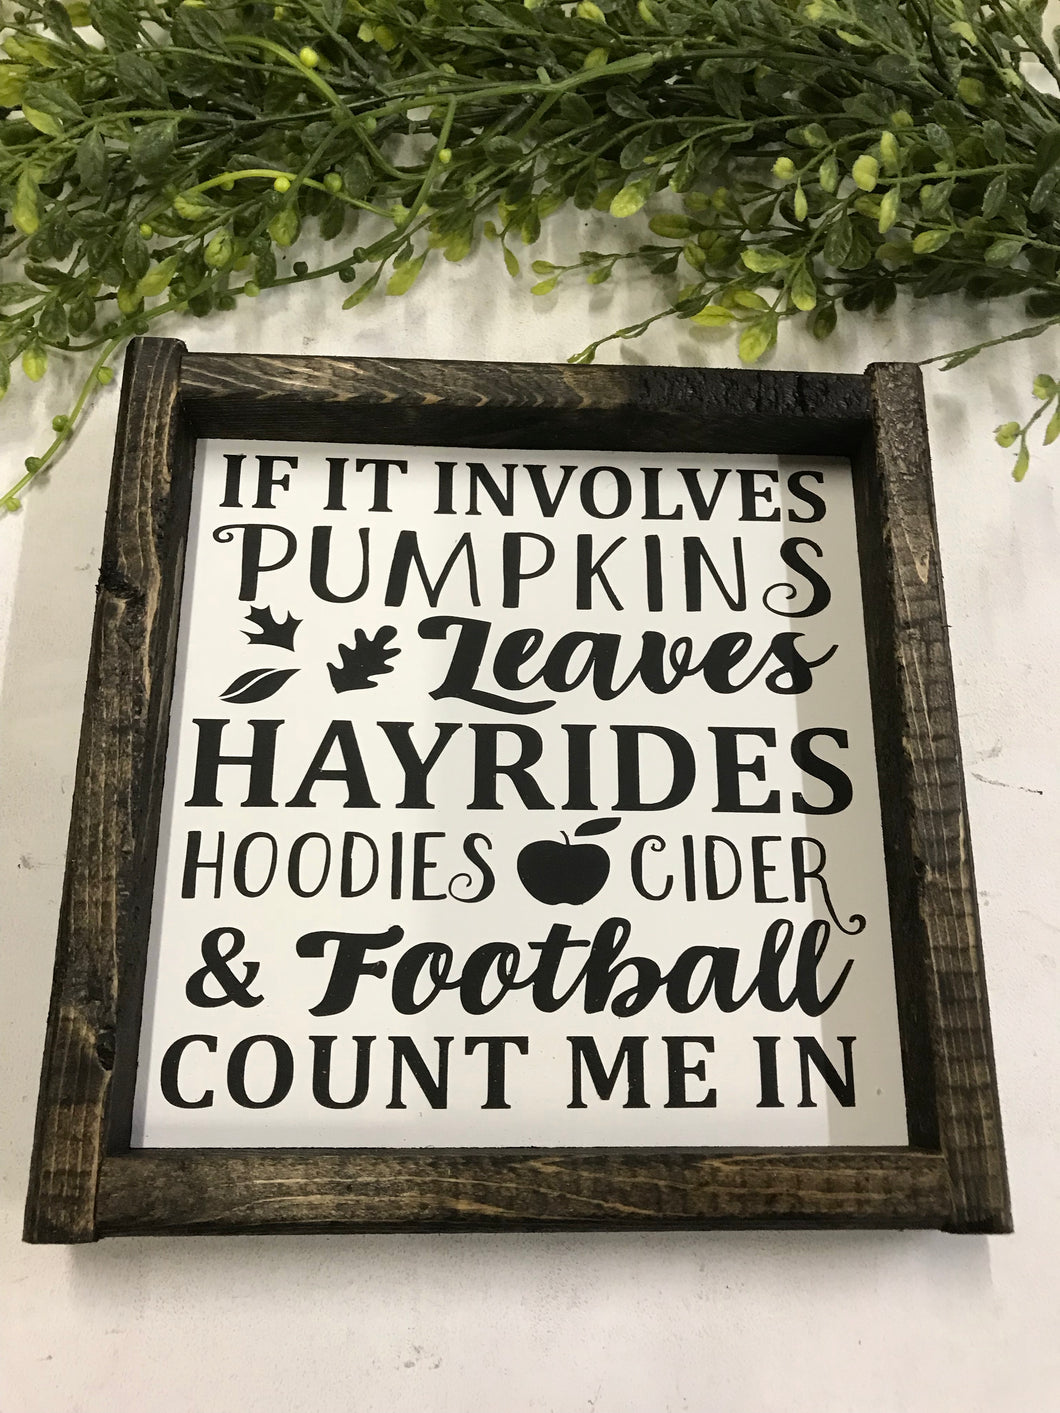 If it involves pumpkins